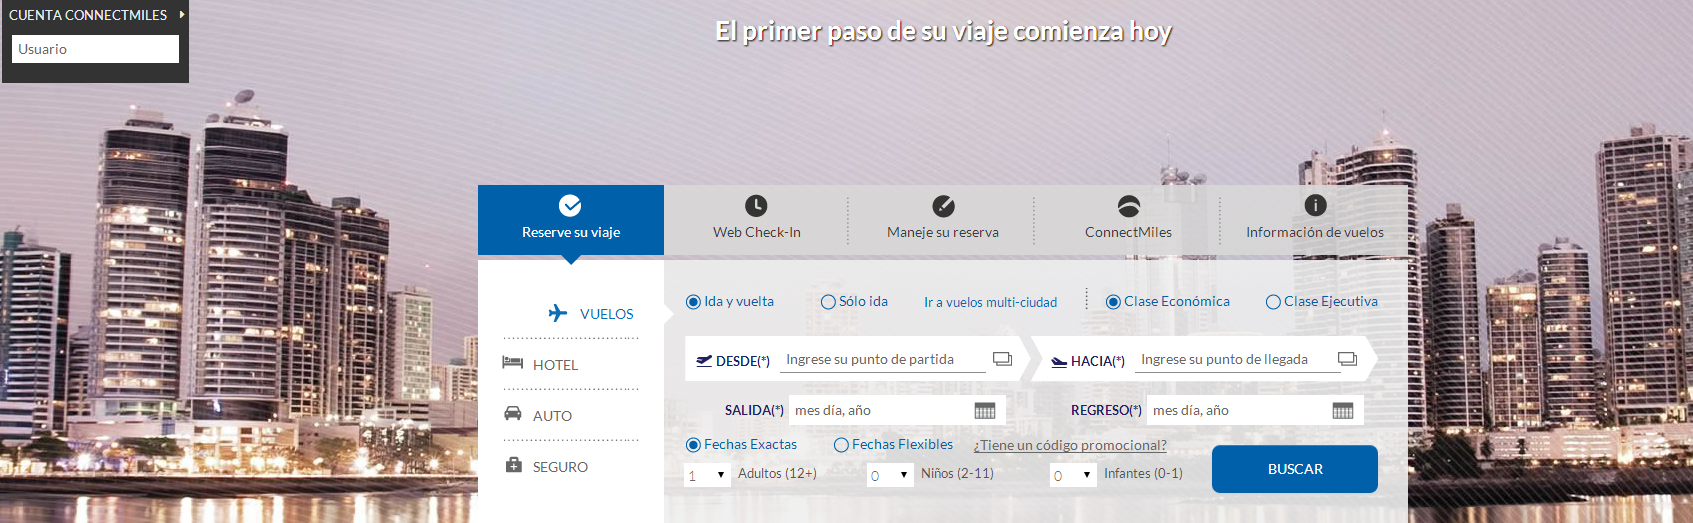 巴拿马航空公司官网